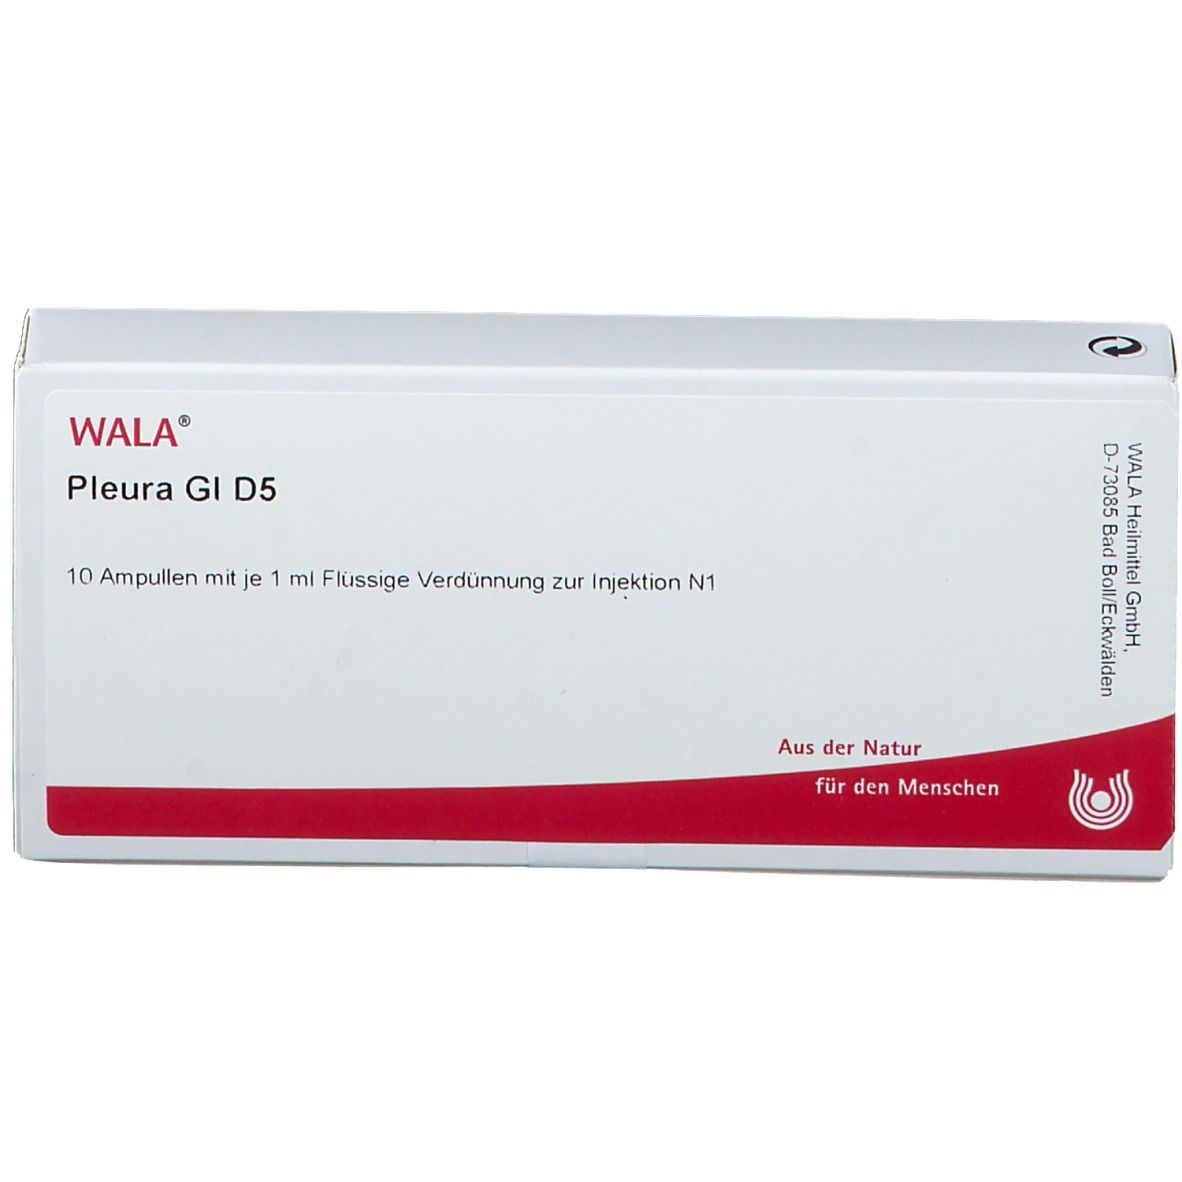 WALA® Pleura Gl D 5